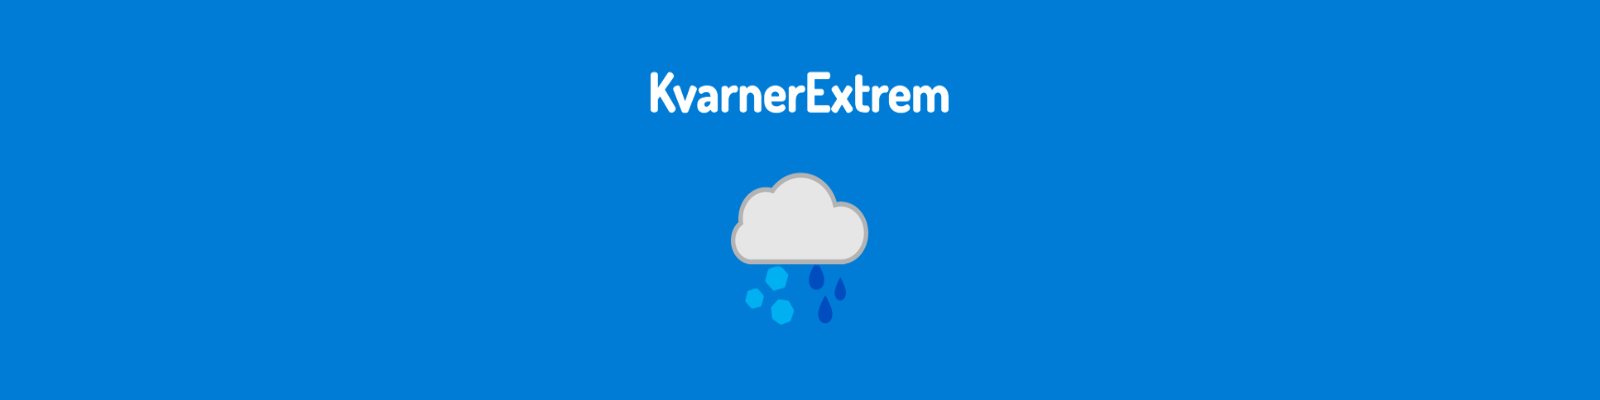 Banner projekta KvarnerExtrem sa logotipom koji čini oblak sa kišnim kapima na desnoj strani i tučom na lijevoj